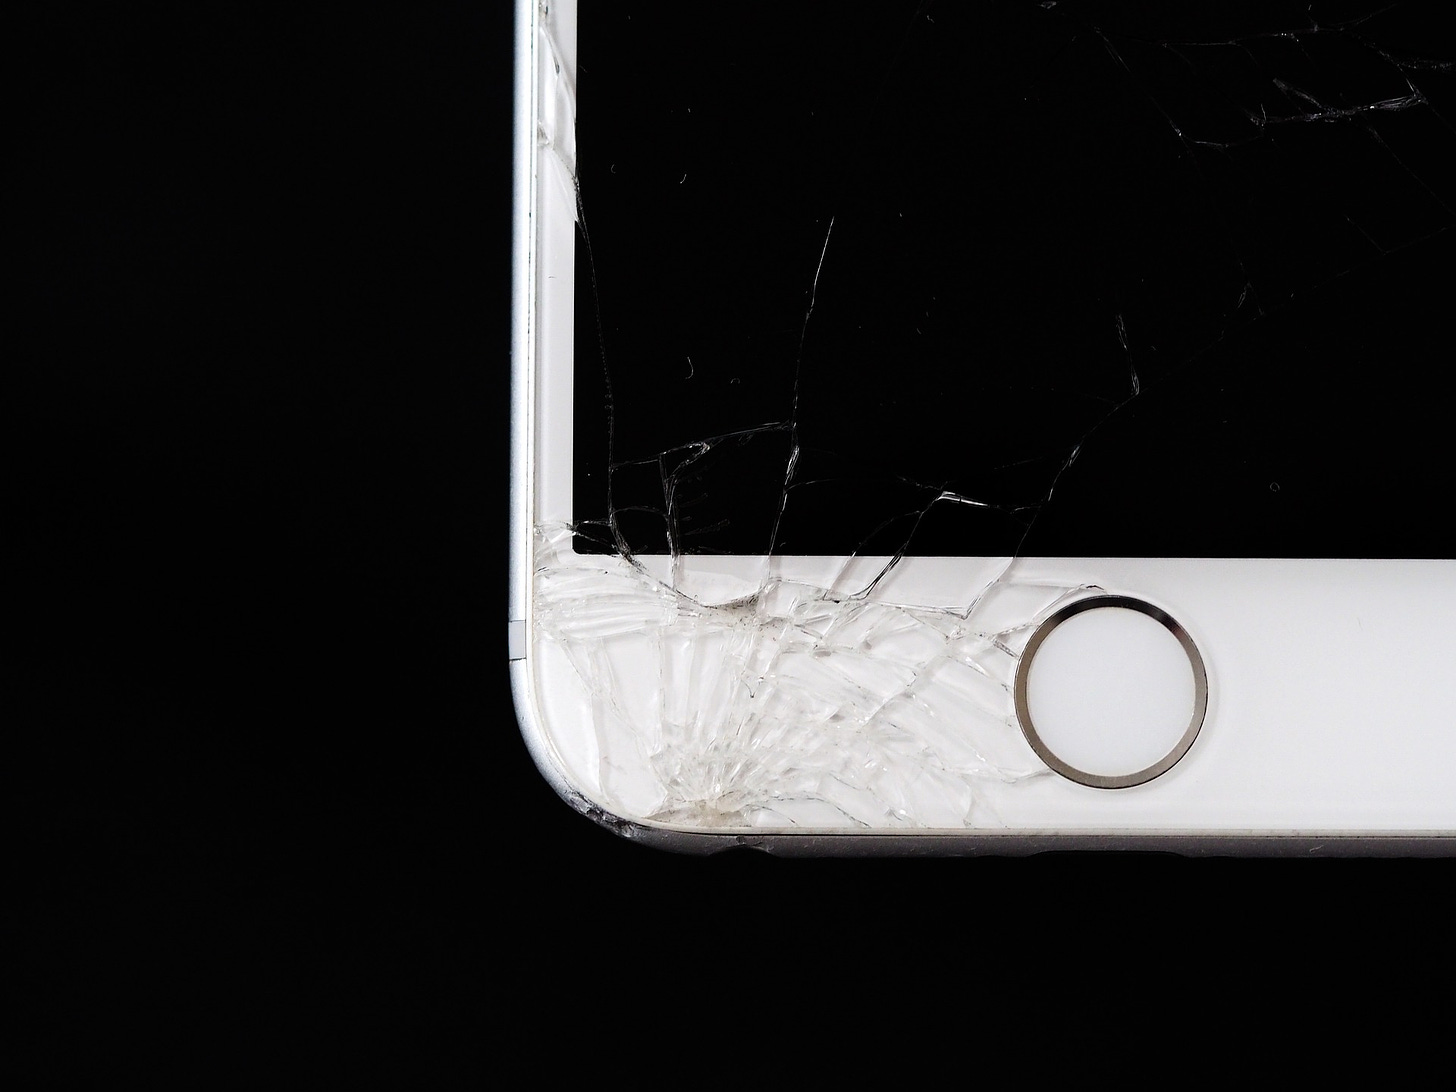 Image of broken smartphone